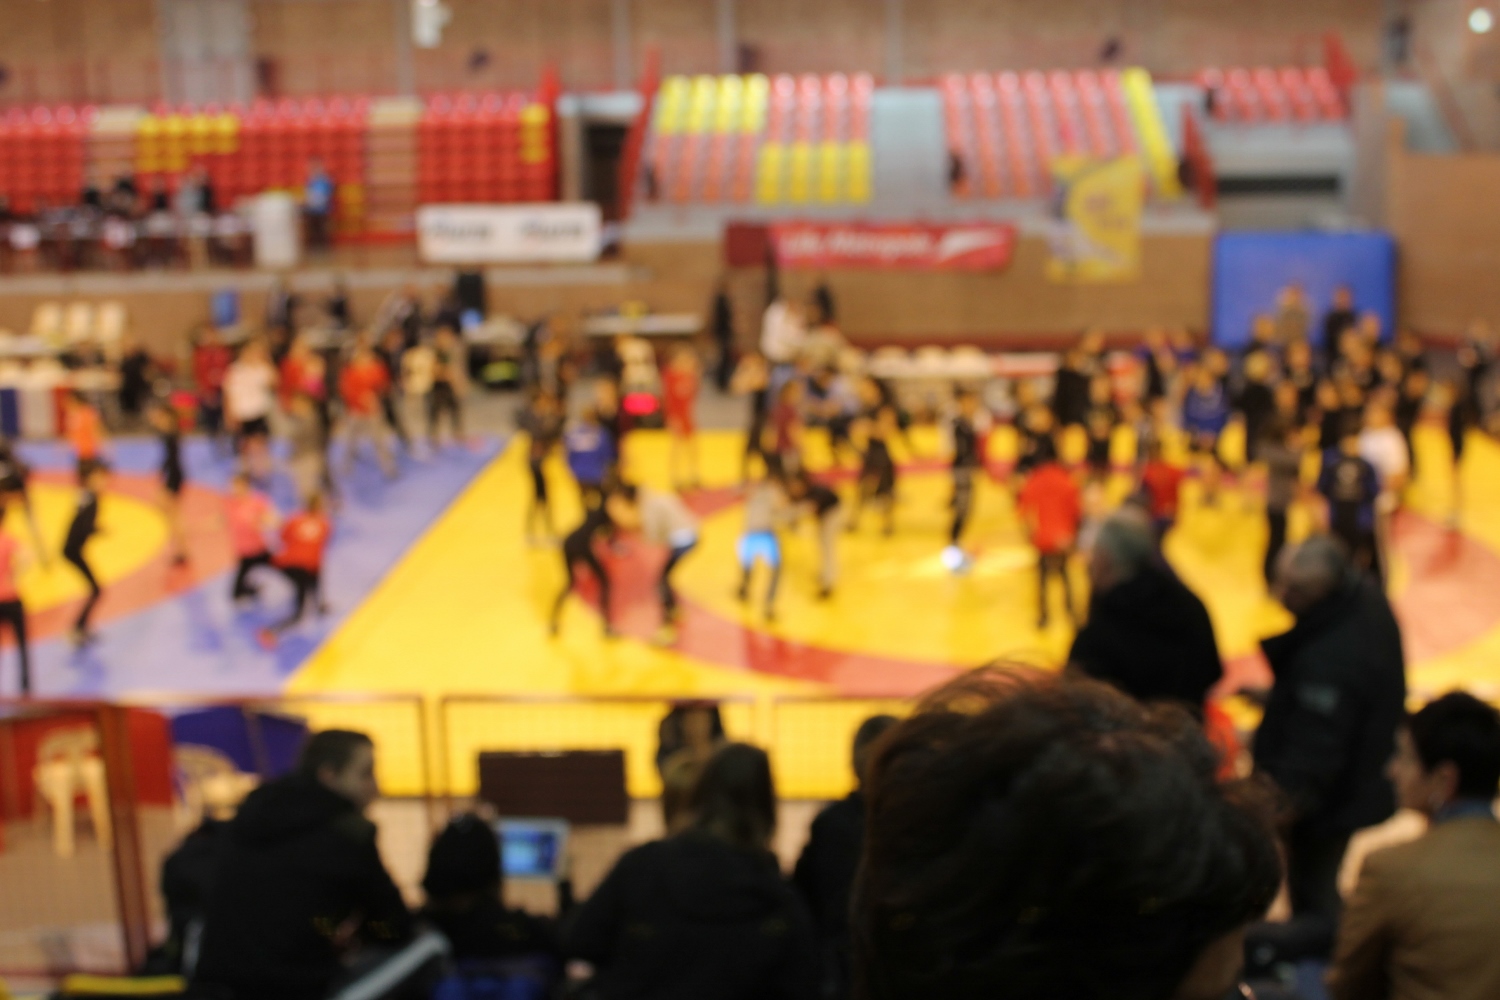 21 mars 2015 - Championnats de France de Lutte féminine Minimes, Cadettes, Juniors à Lomme